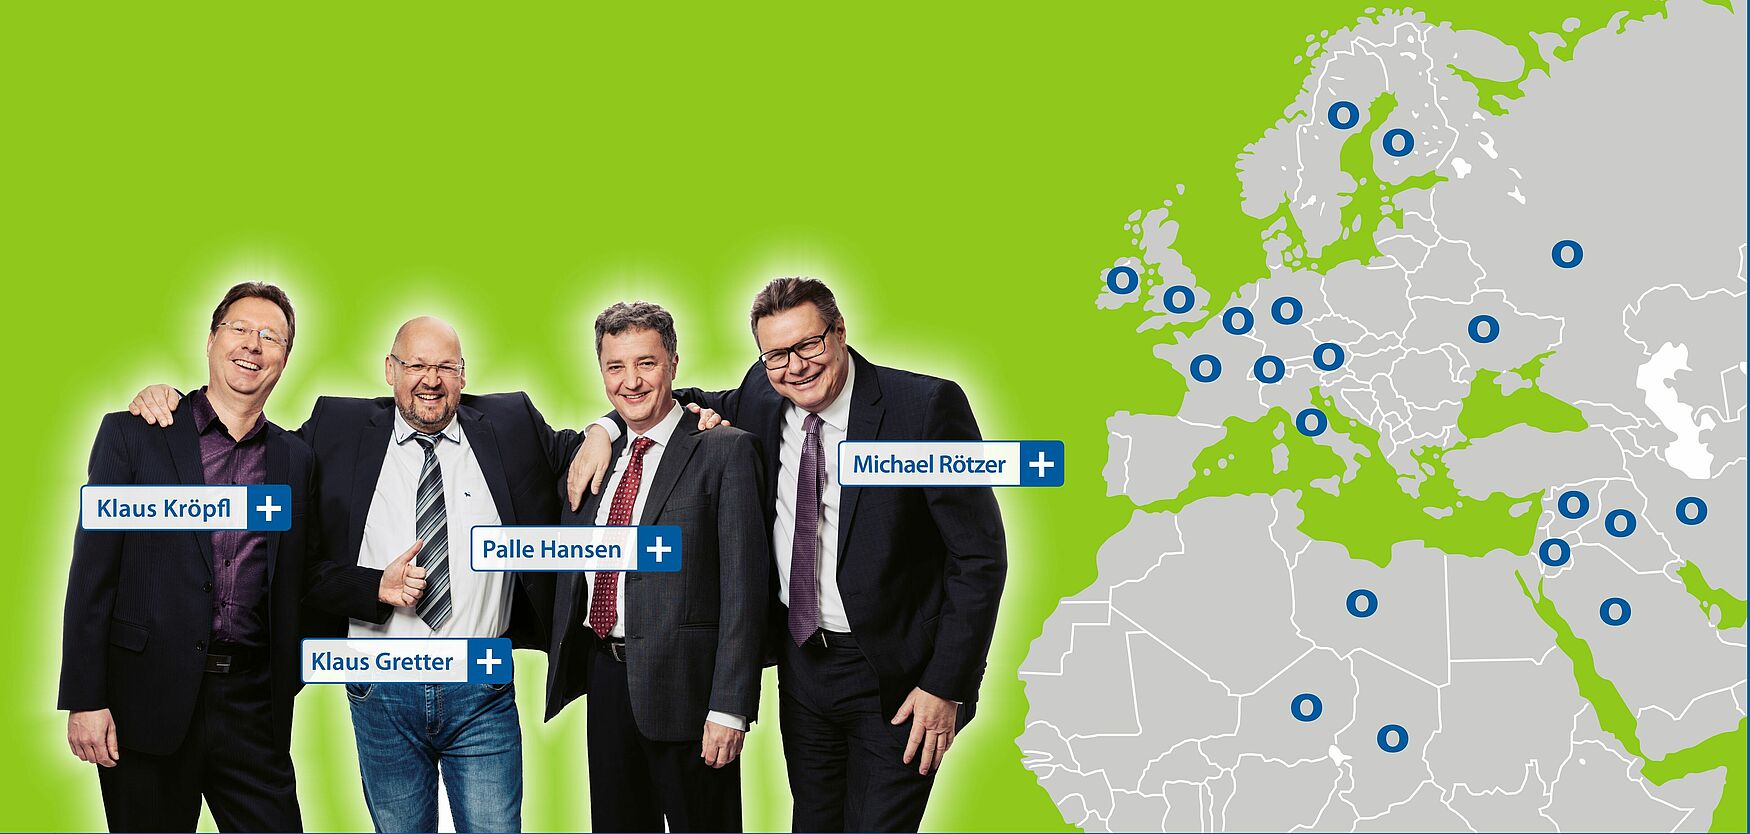 In der Grafik sind links die Vertriebsmitarbeiter Klaus Kröpfl, Klaus Gretter, Palle Hansen und Michael Rötzer. Rechts neben ihnen befindet sich eine Karte von Europa, Nordafrika und Vorderasien, wo die Standorte der Anlagen mit blauen Ortner O‘s markiert sind.